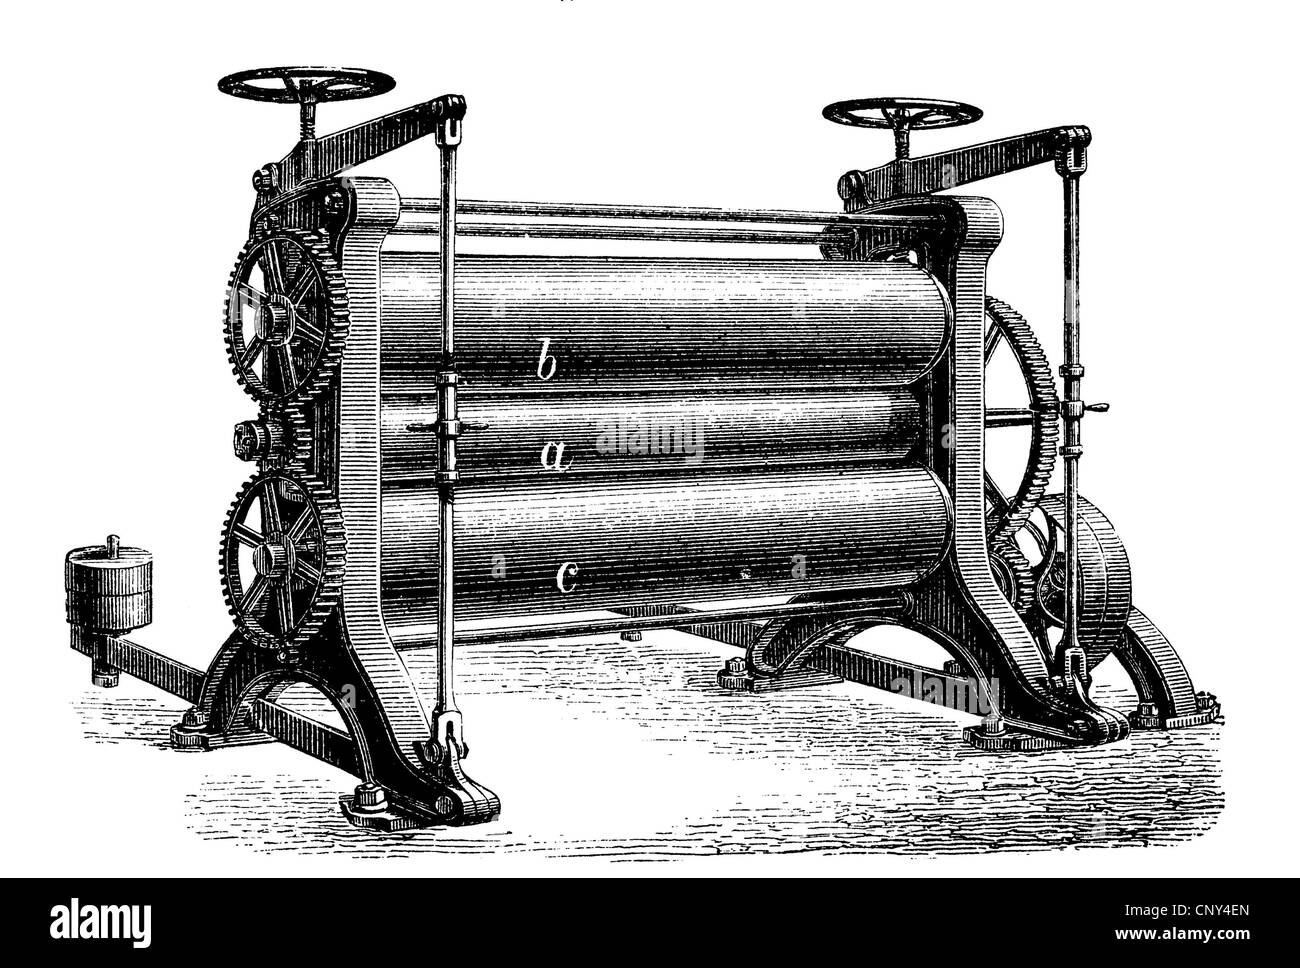 Machine de finition, trois rouleaux d'illustration historique, calendrier, gravure sur bois, vers 1888 Banque D'Images